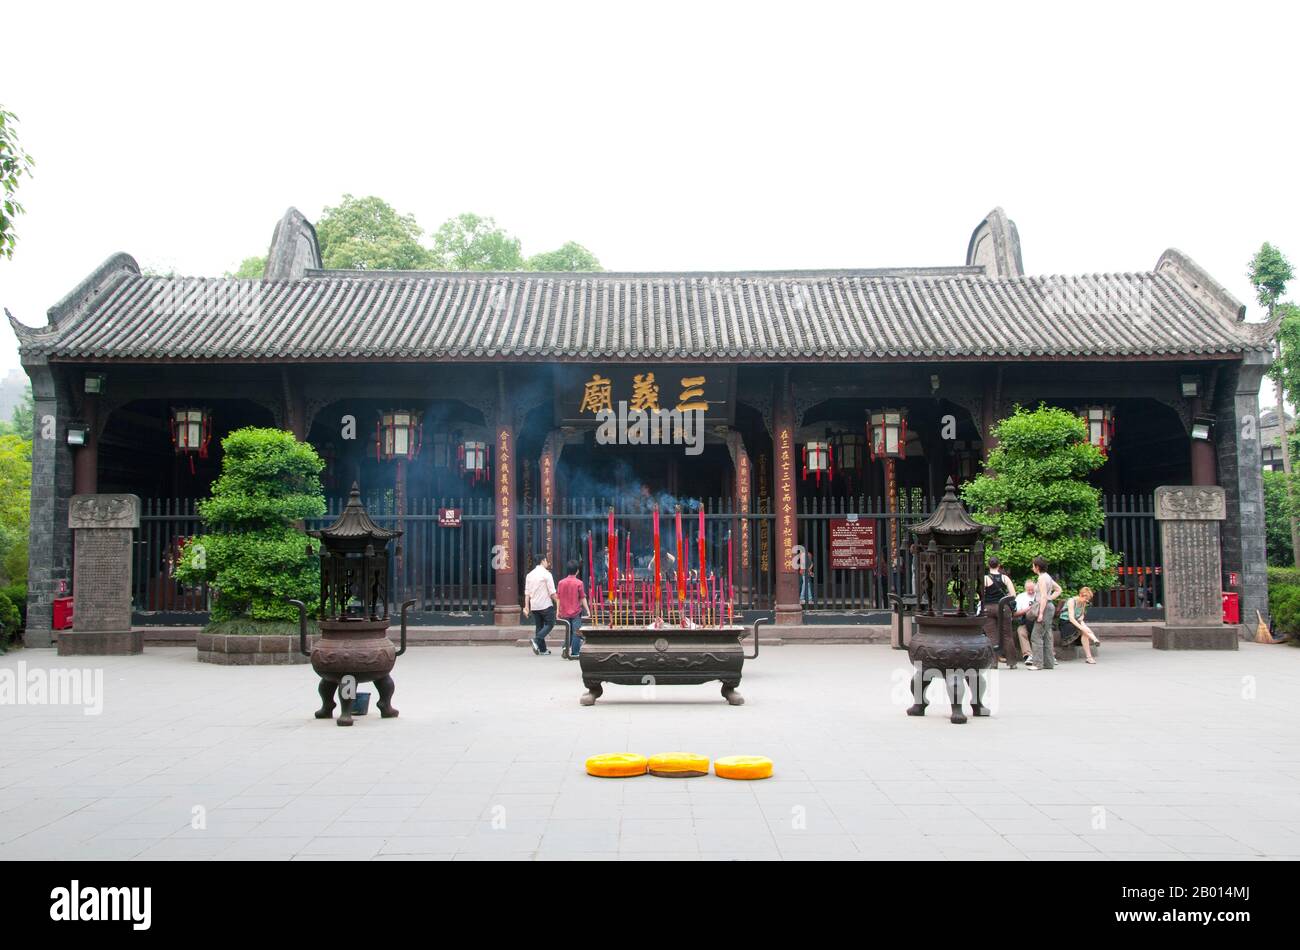 China: Wuhou CI (Wuhou Ancestral oder Gedenkhalle), Chengdu, Provinz Sichuan. Wuhou CI ist Zhuge Liang, dem Helden des Klassikers „die Romantik der drei Königreiche“, und seinem Kaiser Liu bei gewidmet. Zhuge Liang (181–234) war Kanzler von Shu Han während der Zeit der drei Königreiche der chinesischen Geschichte. Er wird oft als der größte und versierteste Stratege seiner Zeit anerkannt. Chengdu, früher bekannt als Chengtu, ist die Hauptstadt der Provinz Sichuan im Südwesten Chinas. Im frühen 4. Jahrhundert v. Chr. verlegte der 9. Kaiming-König des alten Shu seine Hauptstadt an den heutigen Standort der Stadt. Stockfoto